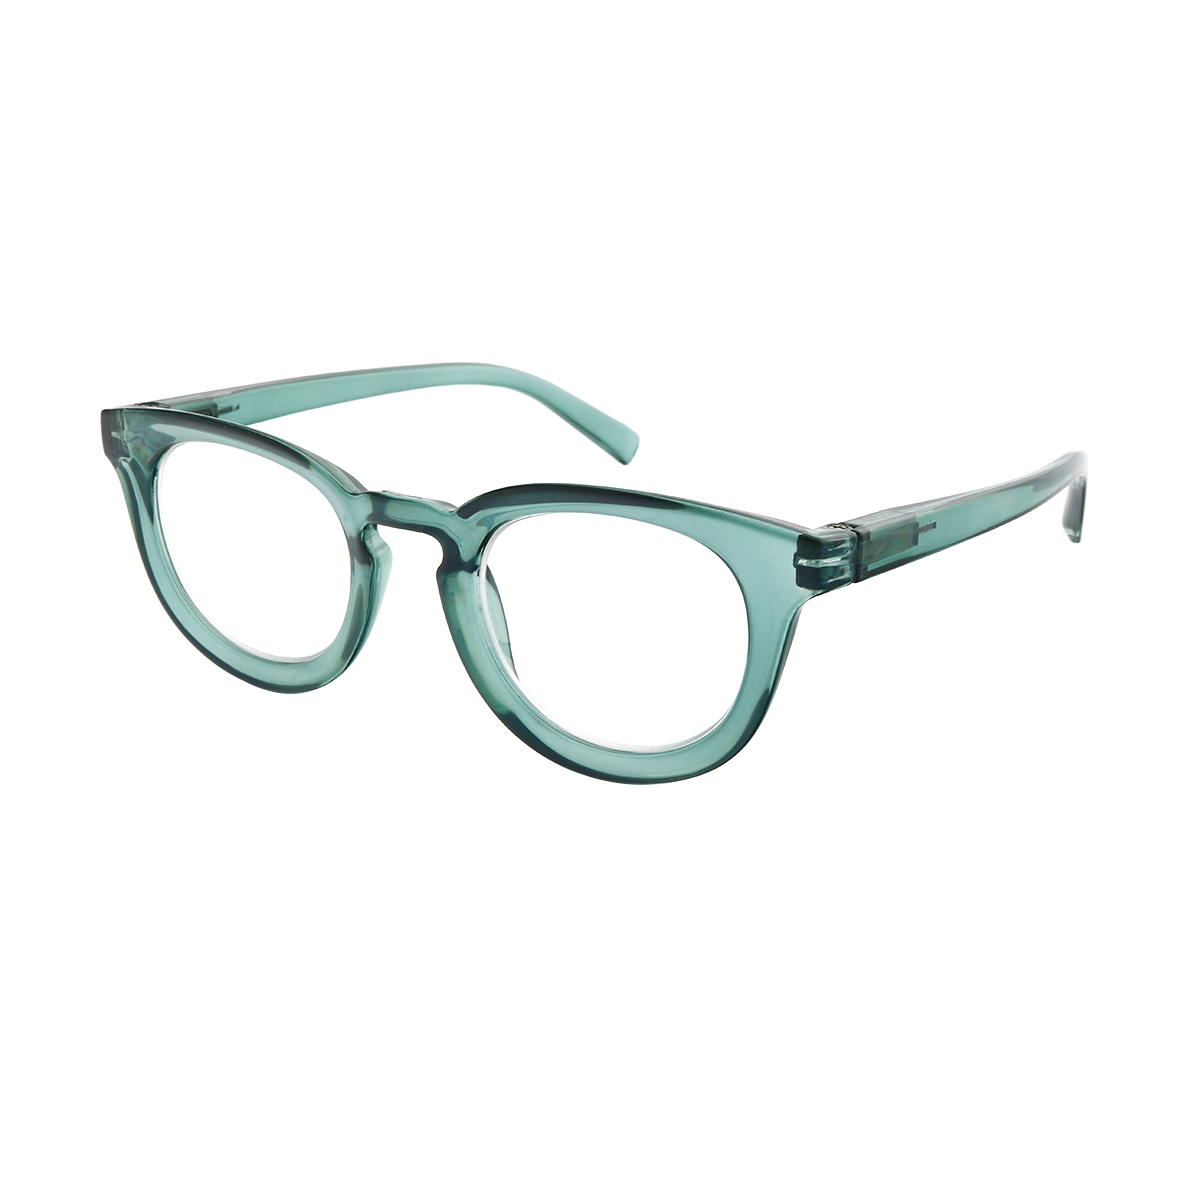 Xenia - Cat-eye Green Reading Glasses for Women